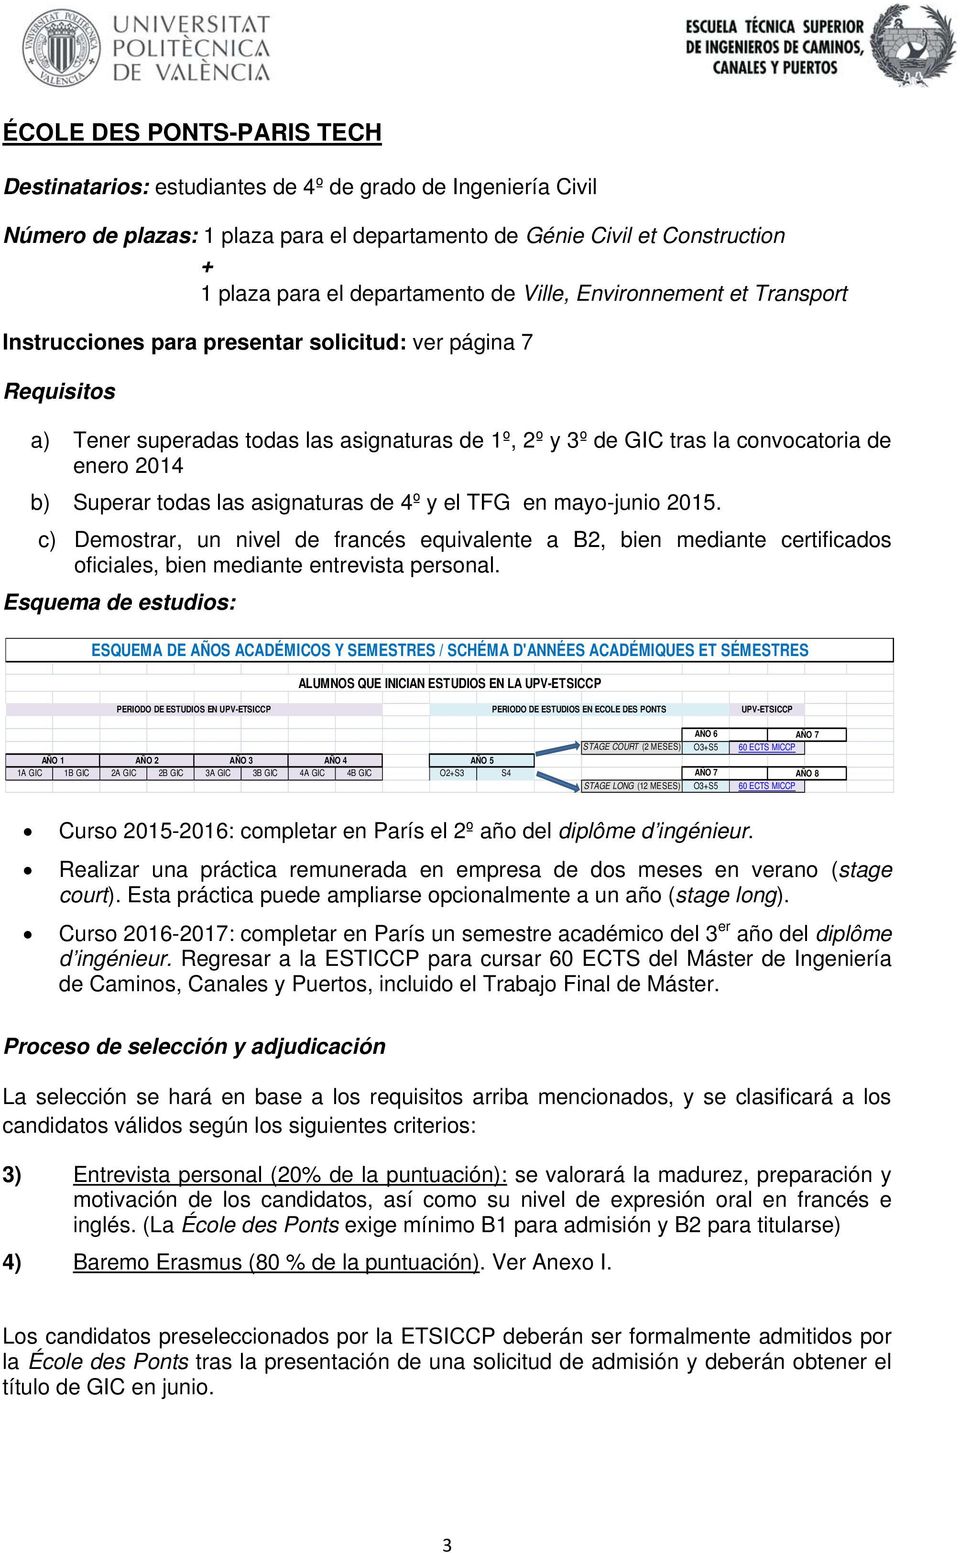 b) Superar todas las asignaturas de 4º y el TFG en mayo-junio 2015. c) Demostrar, un nivel de francés equivalente a B2, bien mediante certificados oficiales, bien mediante entrevista personal.